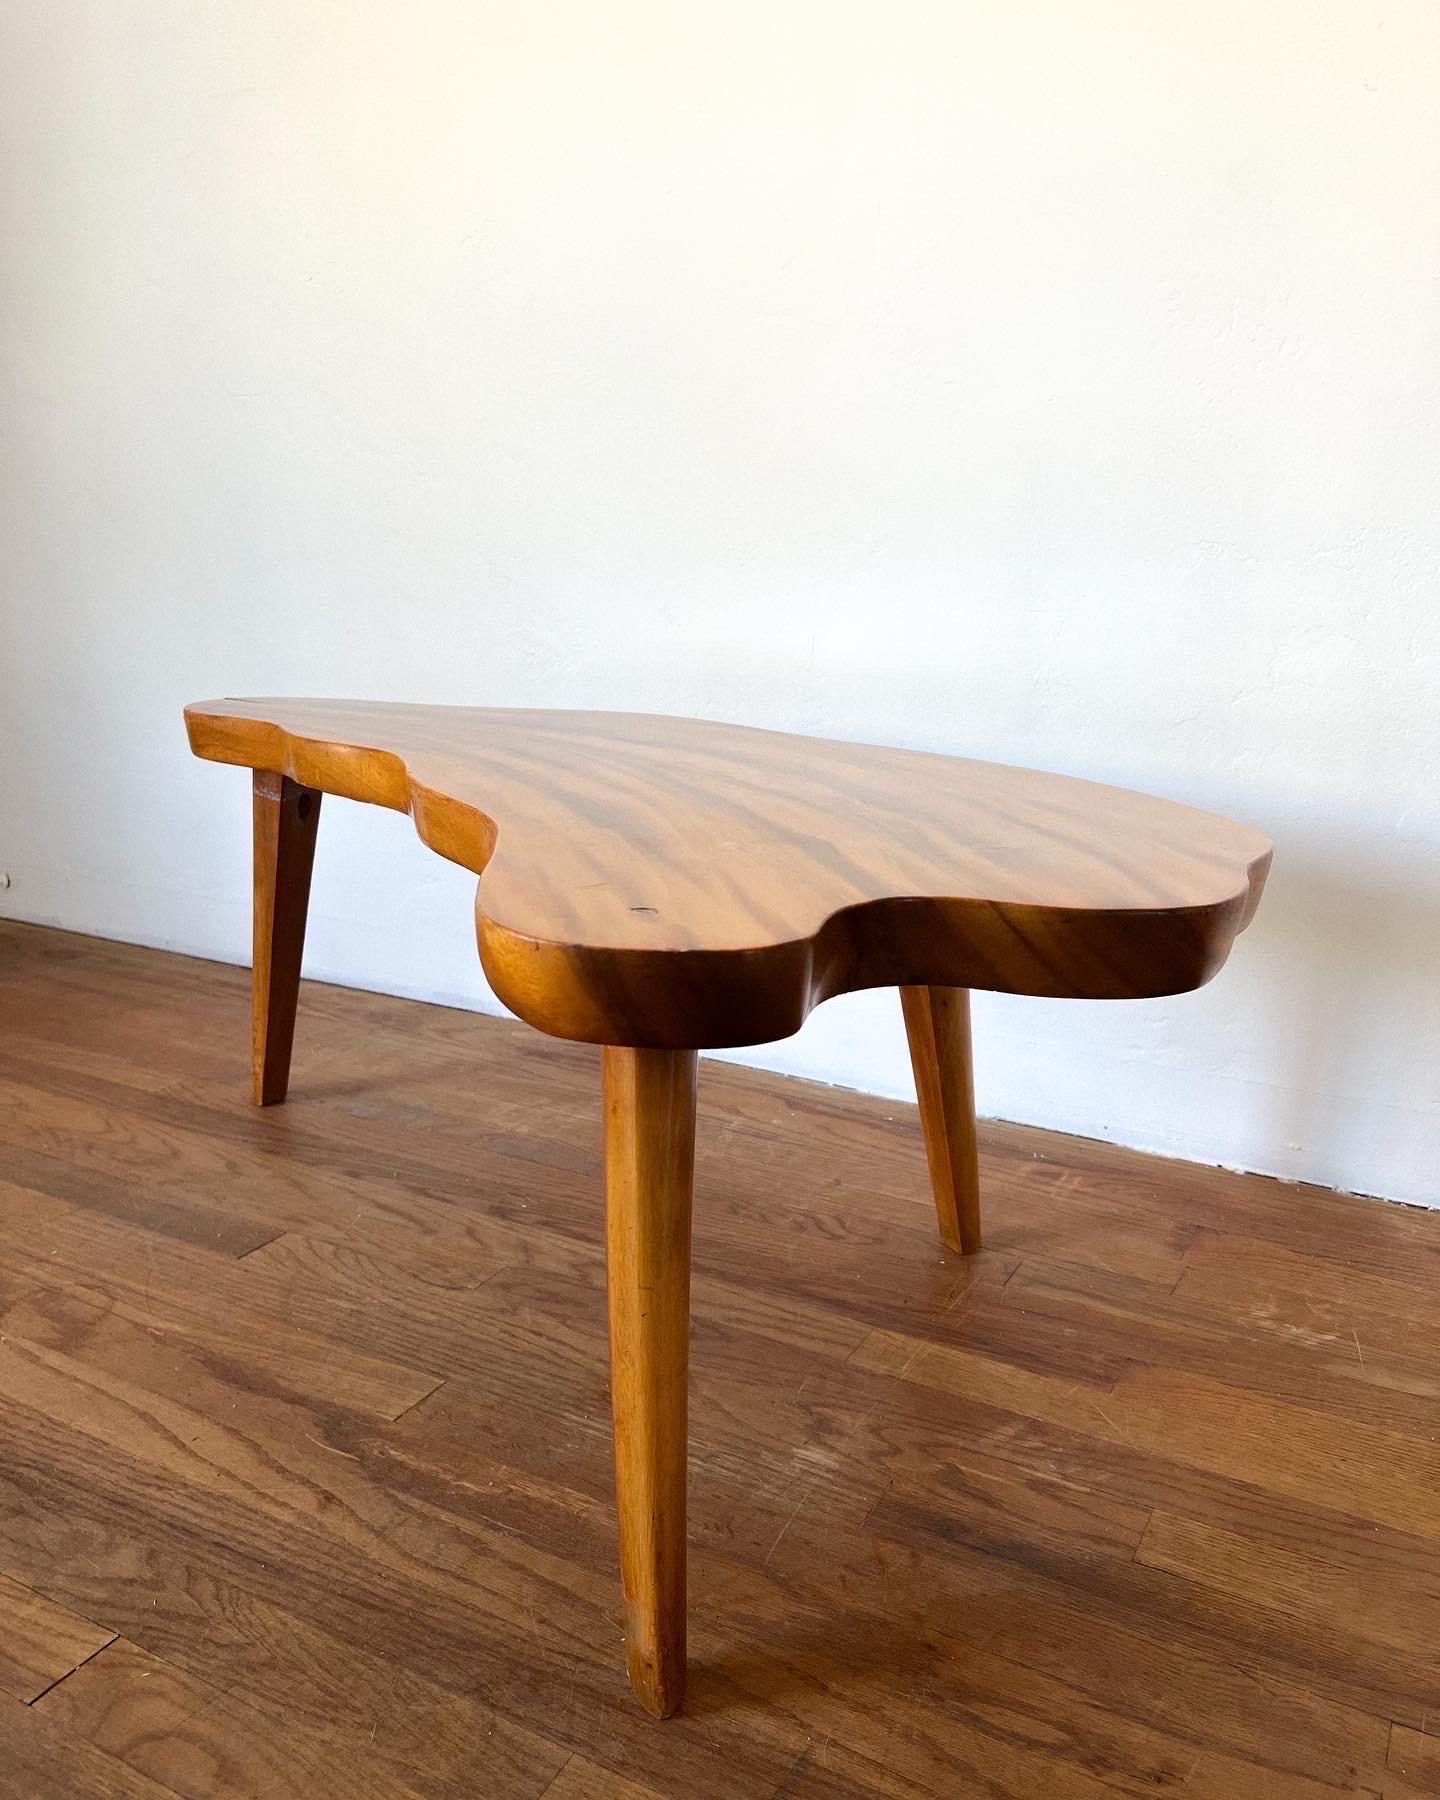 Magnifique table basse à trois pieds en bois massif de Koa épais, de forme libre, plateau massif laqué brillant. Il repose sur trois pieds solides laqués. Beau grain et forme unique, très bel état et propre.